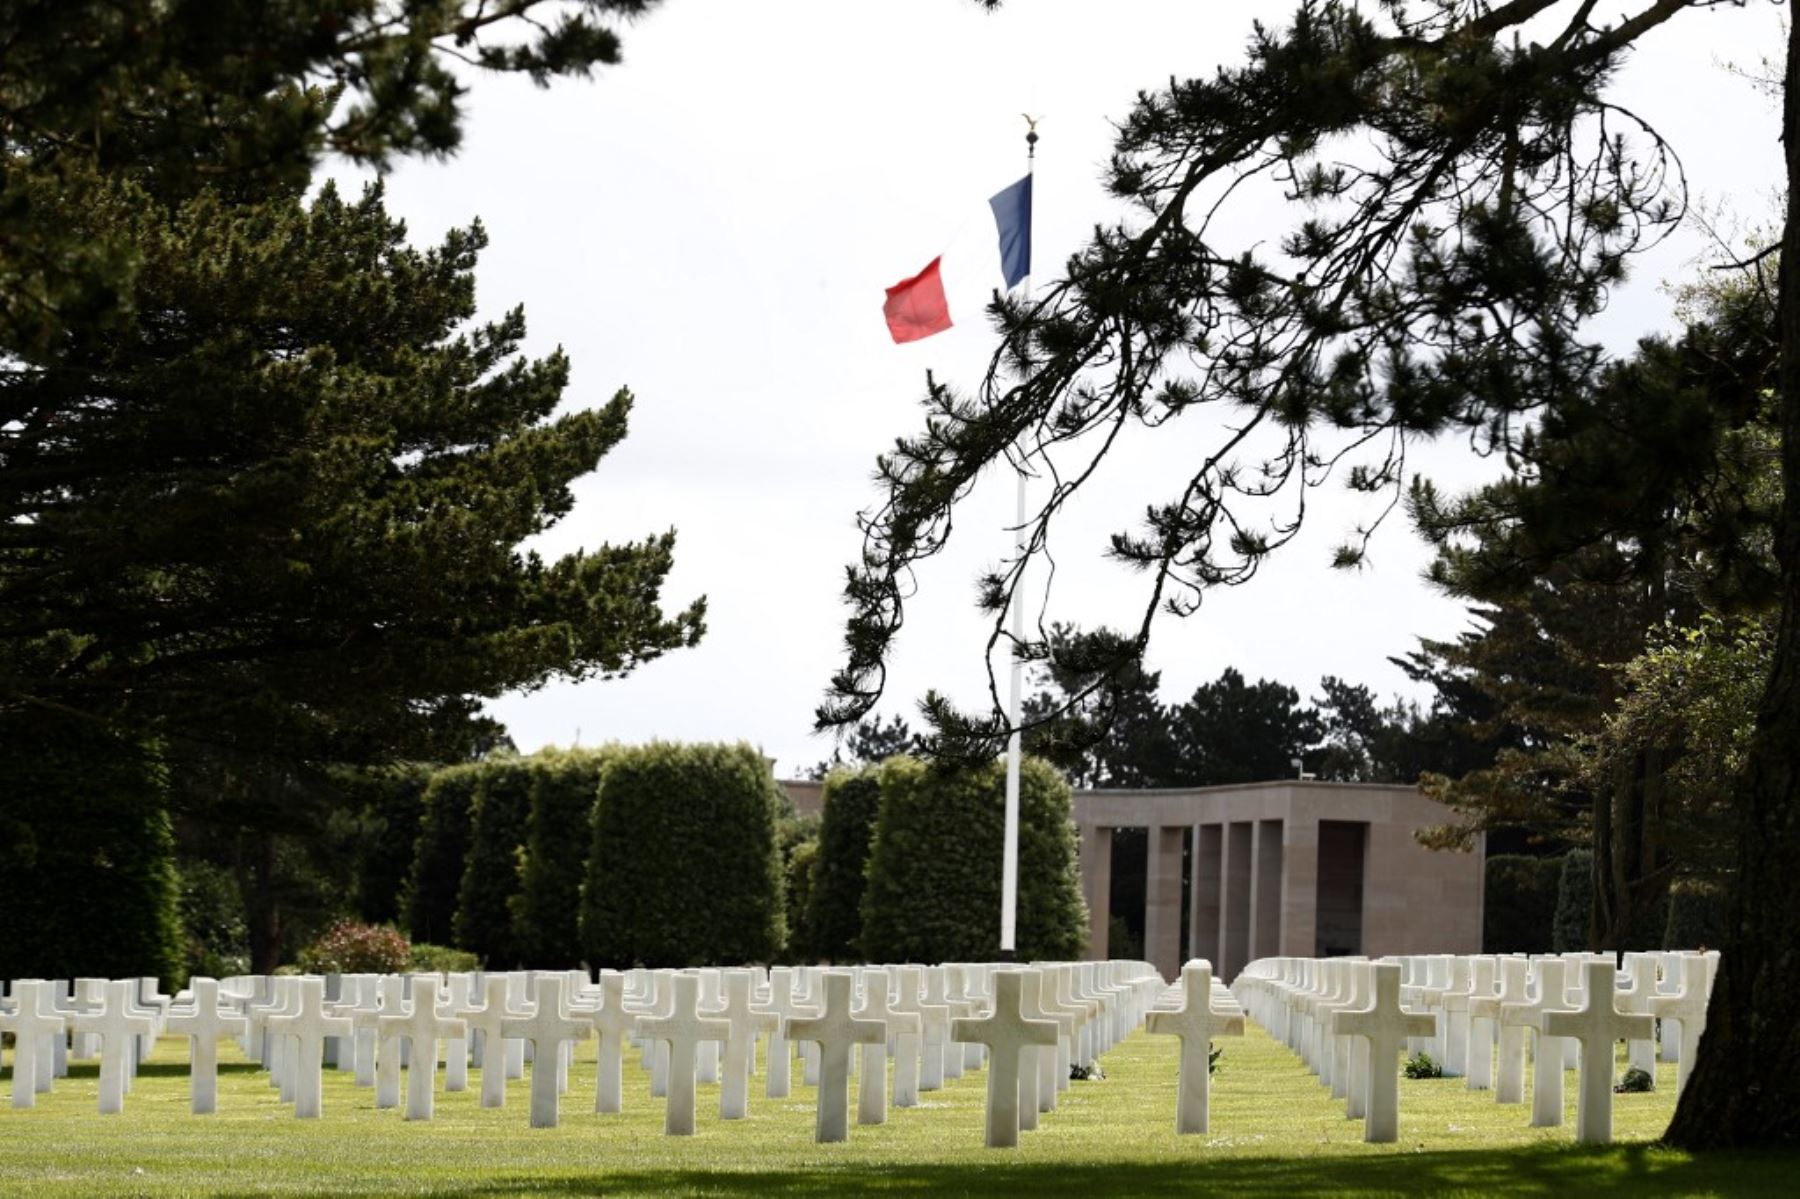 La bandera francesa ondea sobre las lápidas de los soldados asesinados en el Cementerio y Memorial de Normandía en el 76 aniversario del desembarco del día D. Foto: AFP